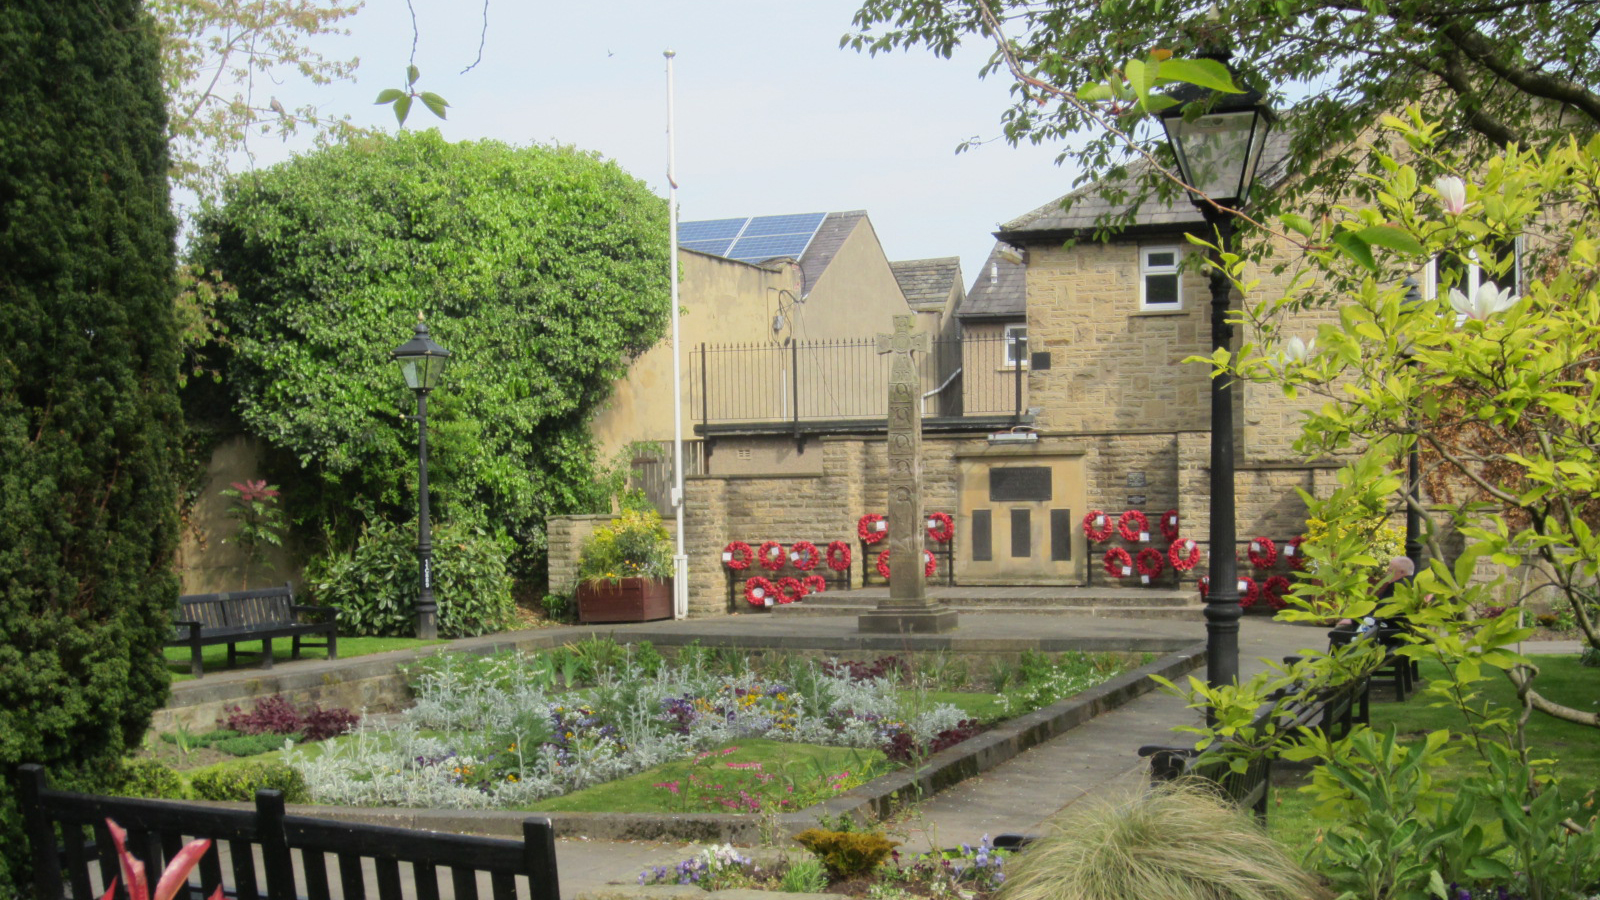 Otley War Memorial Cross and Memorial Garden, Leeds